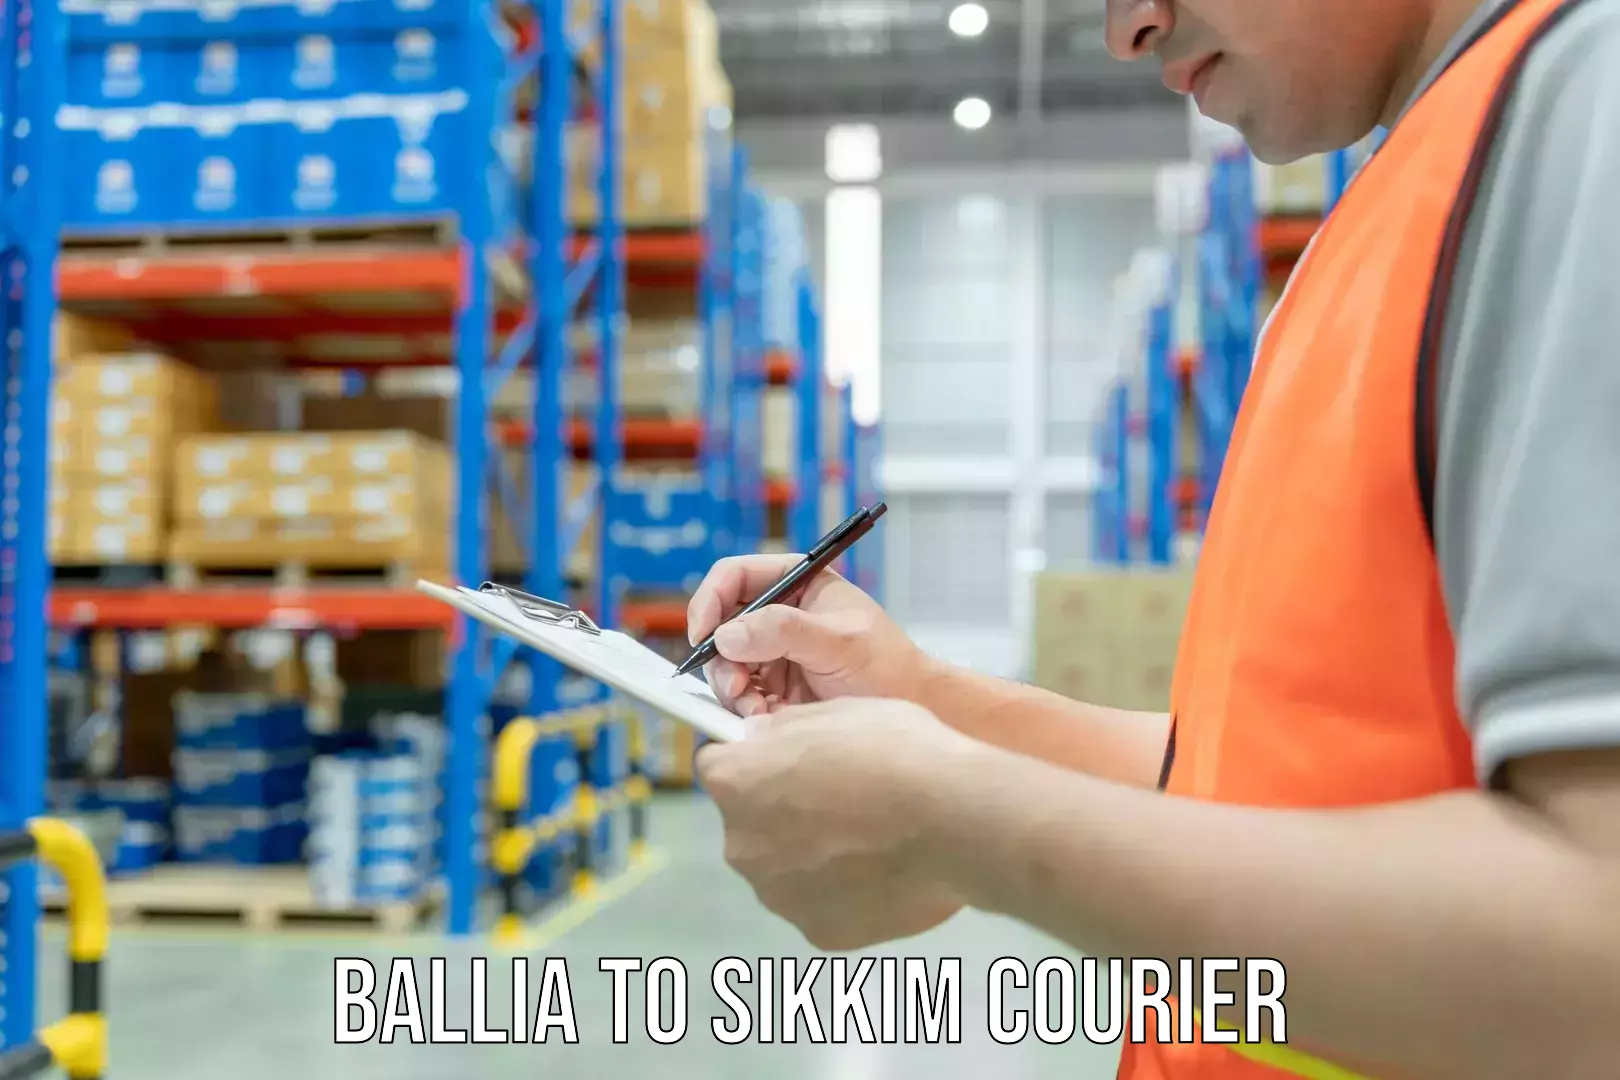 Courier app Ballia to Sikkim